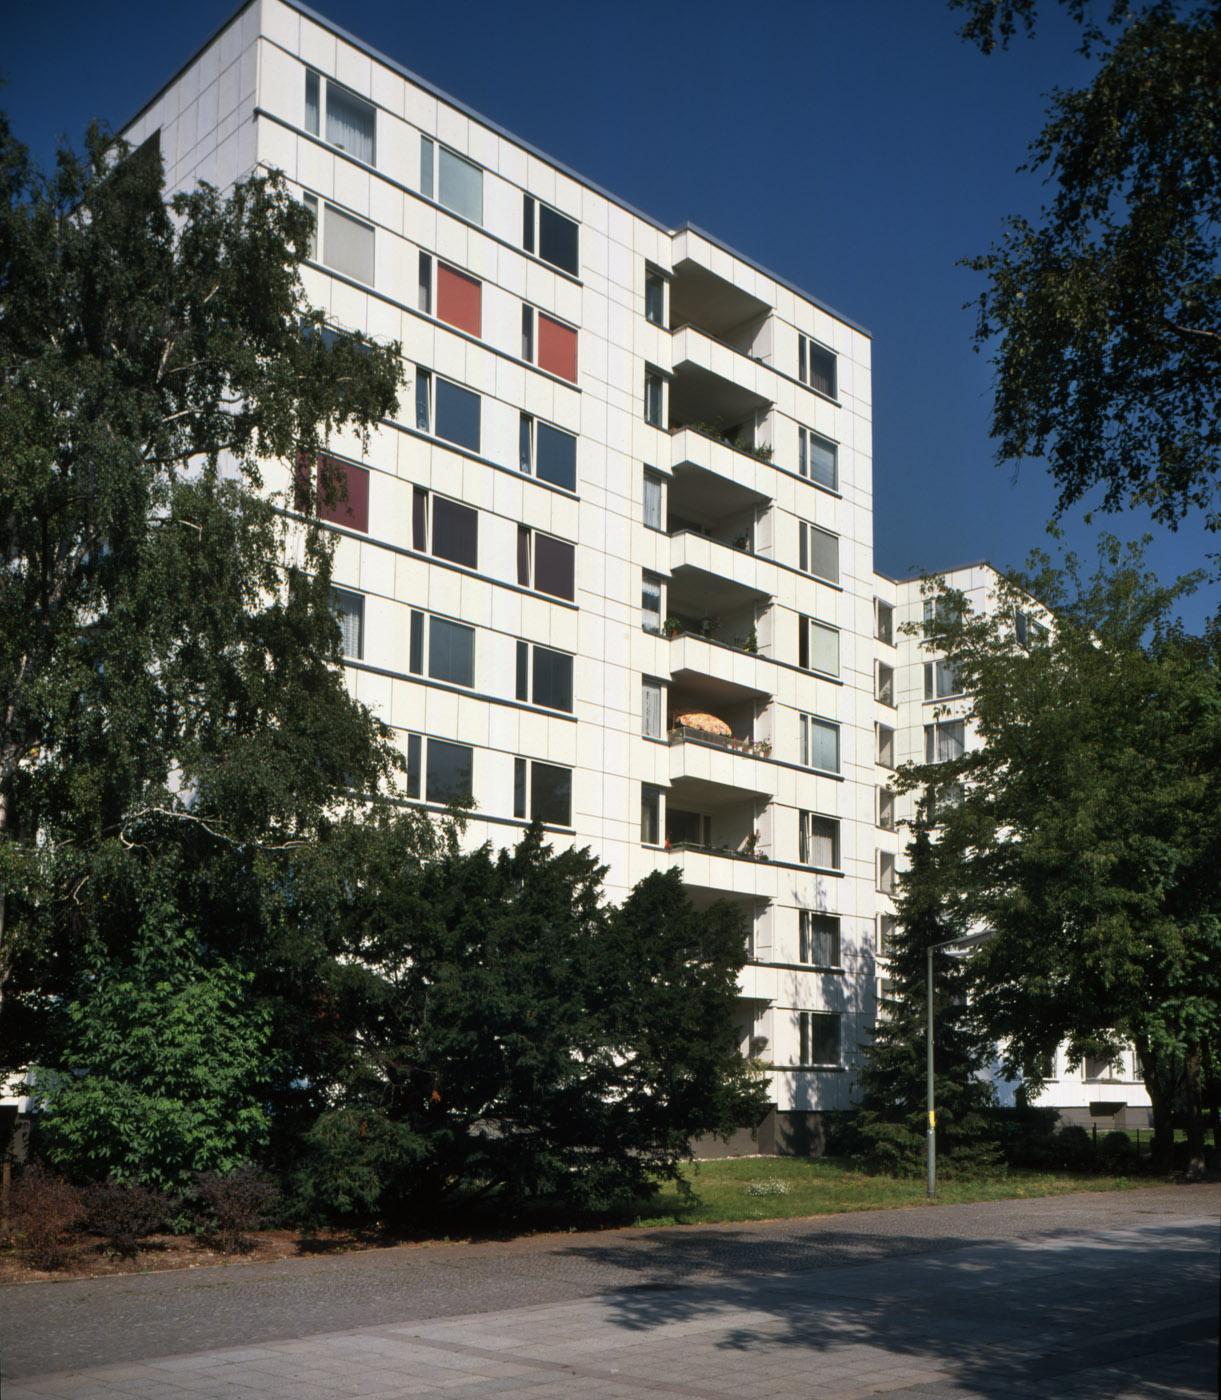 Адрес жилого дома в берлине норвегия недвижимость цены